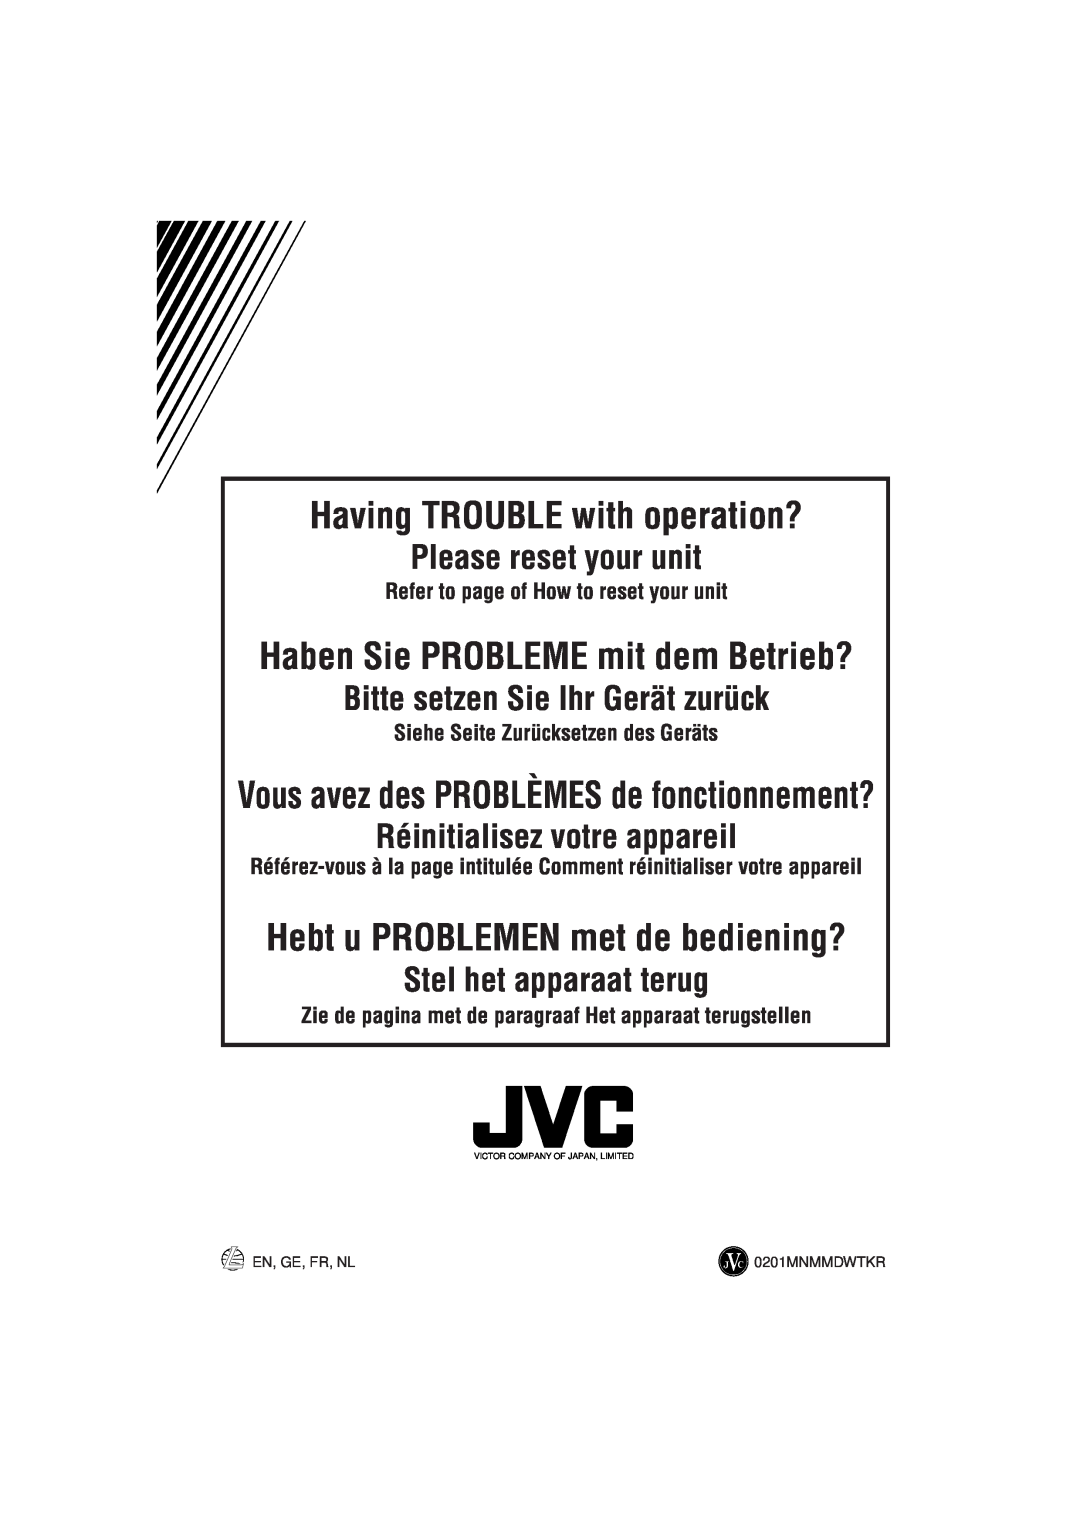 JVC KD-LX330R Having TROUBLE with operation?, Haben Sie PROBLEME mit dem Betrieb?, Hebt u PROBLEMEN met de bediening? 